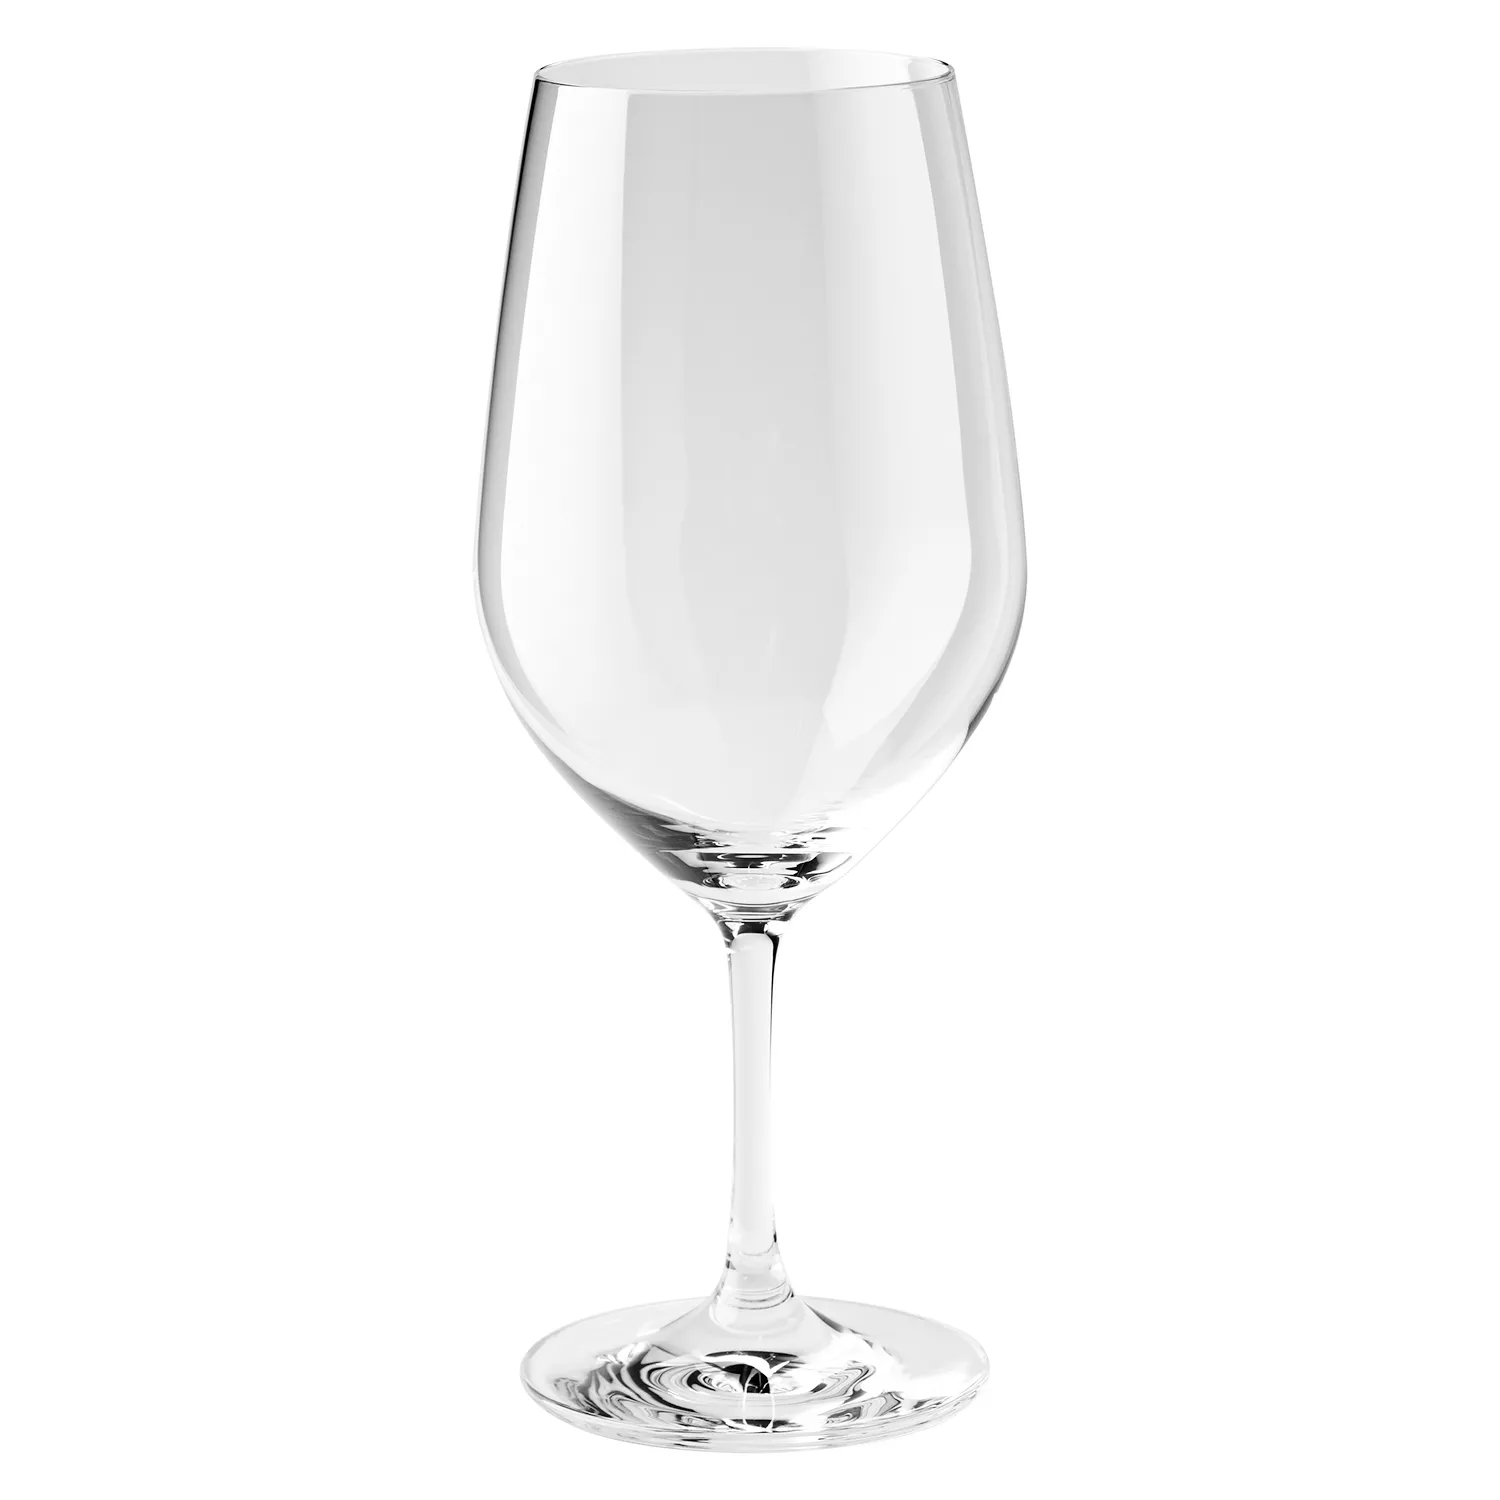 22oz Grand Epicurean Bordeaux Wine Glasses (Set of 4)